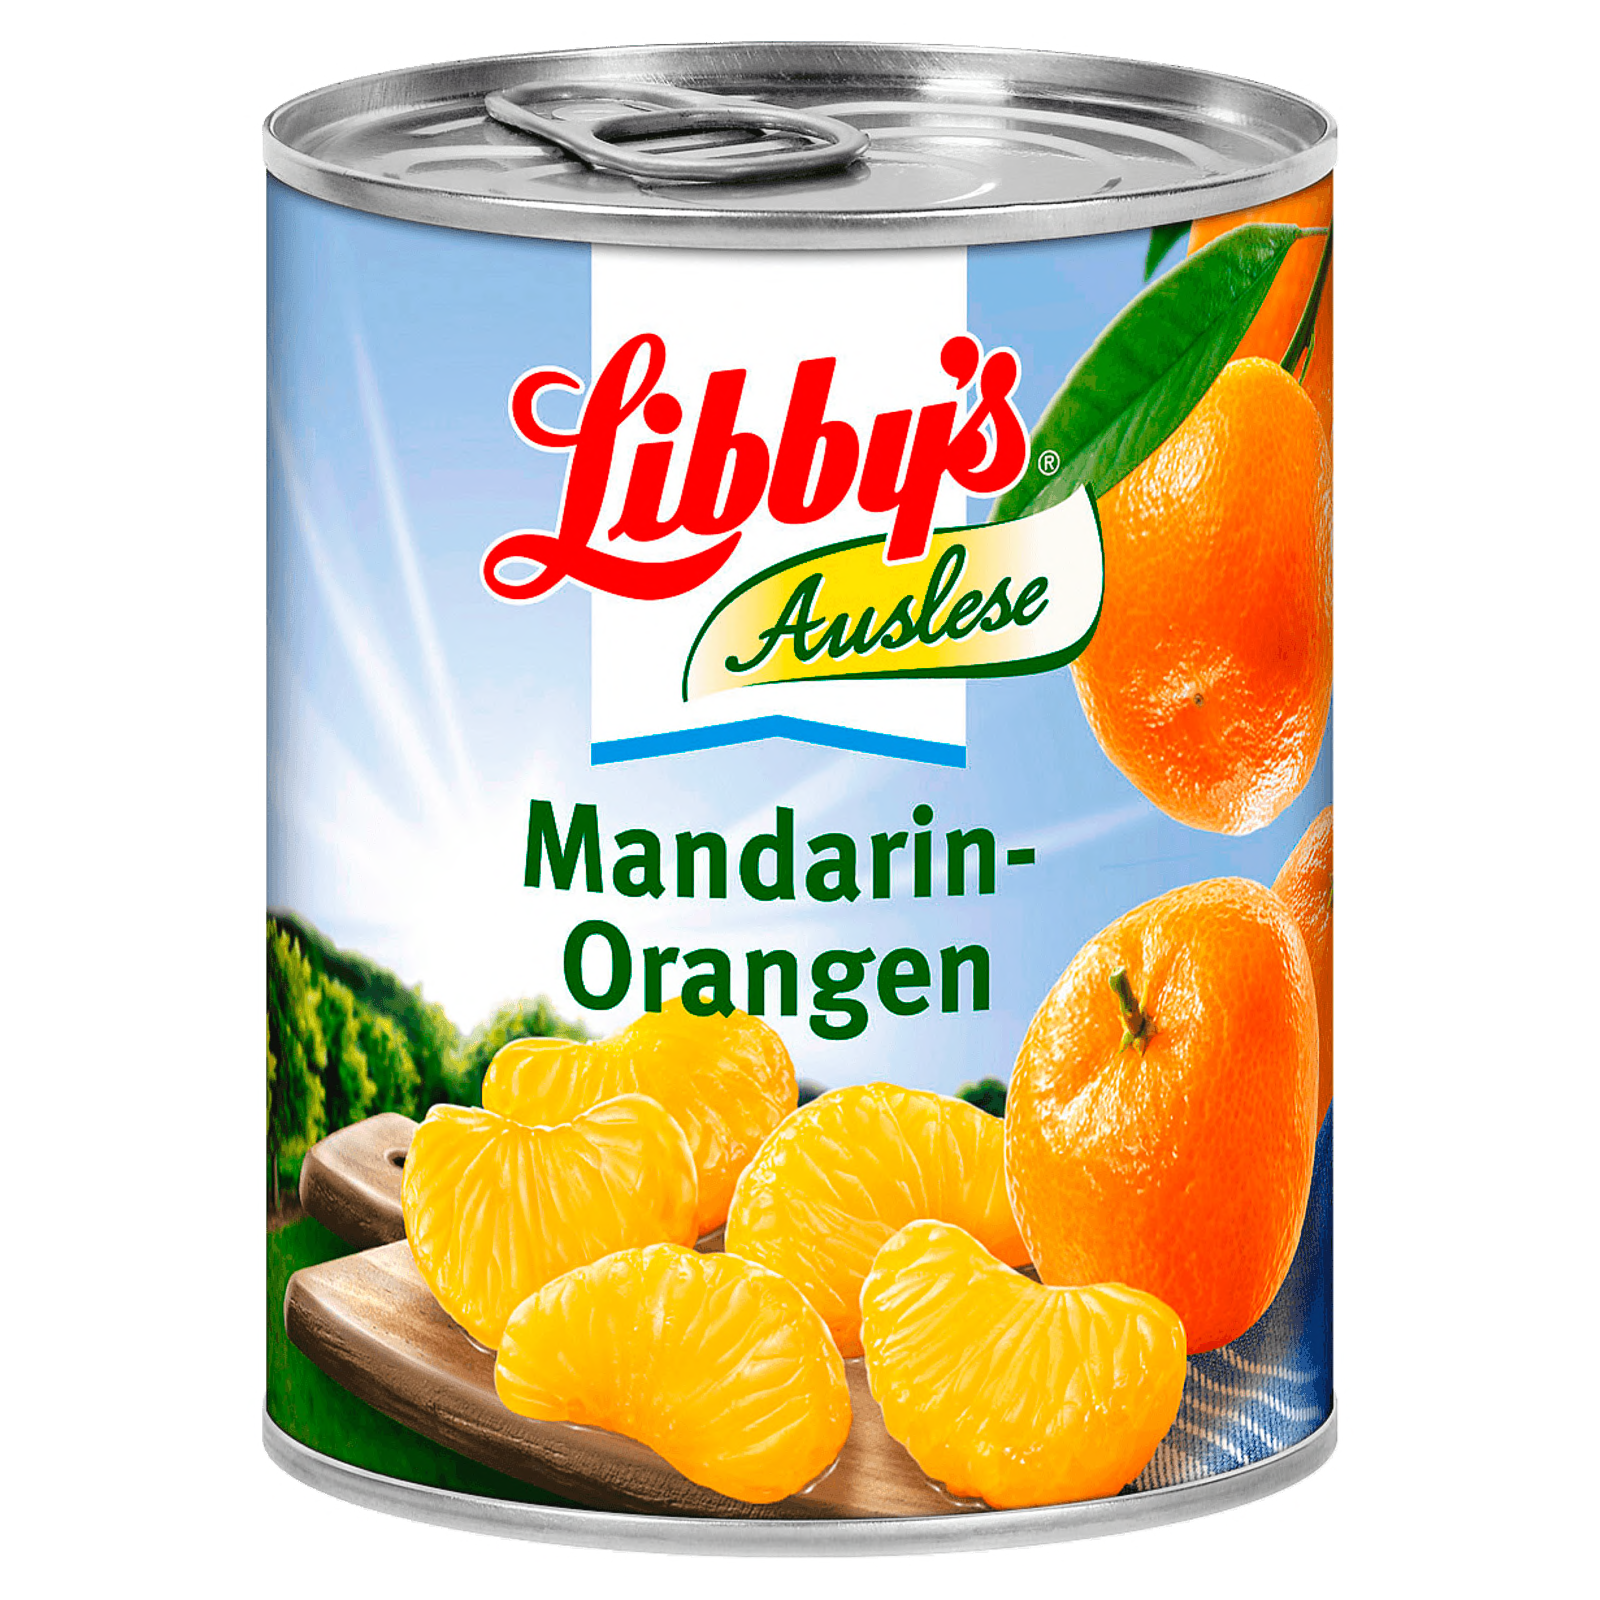 Libby's Mandarin-Orangen 175g  für 2.49 EUR